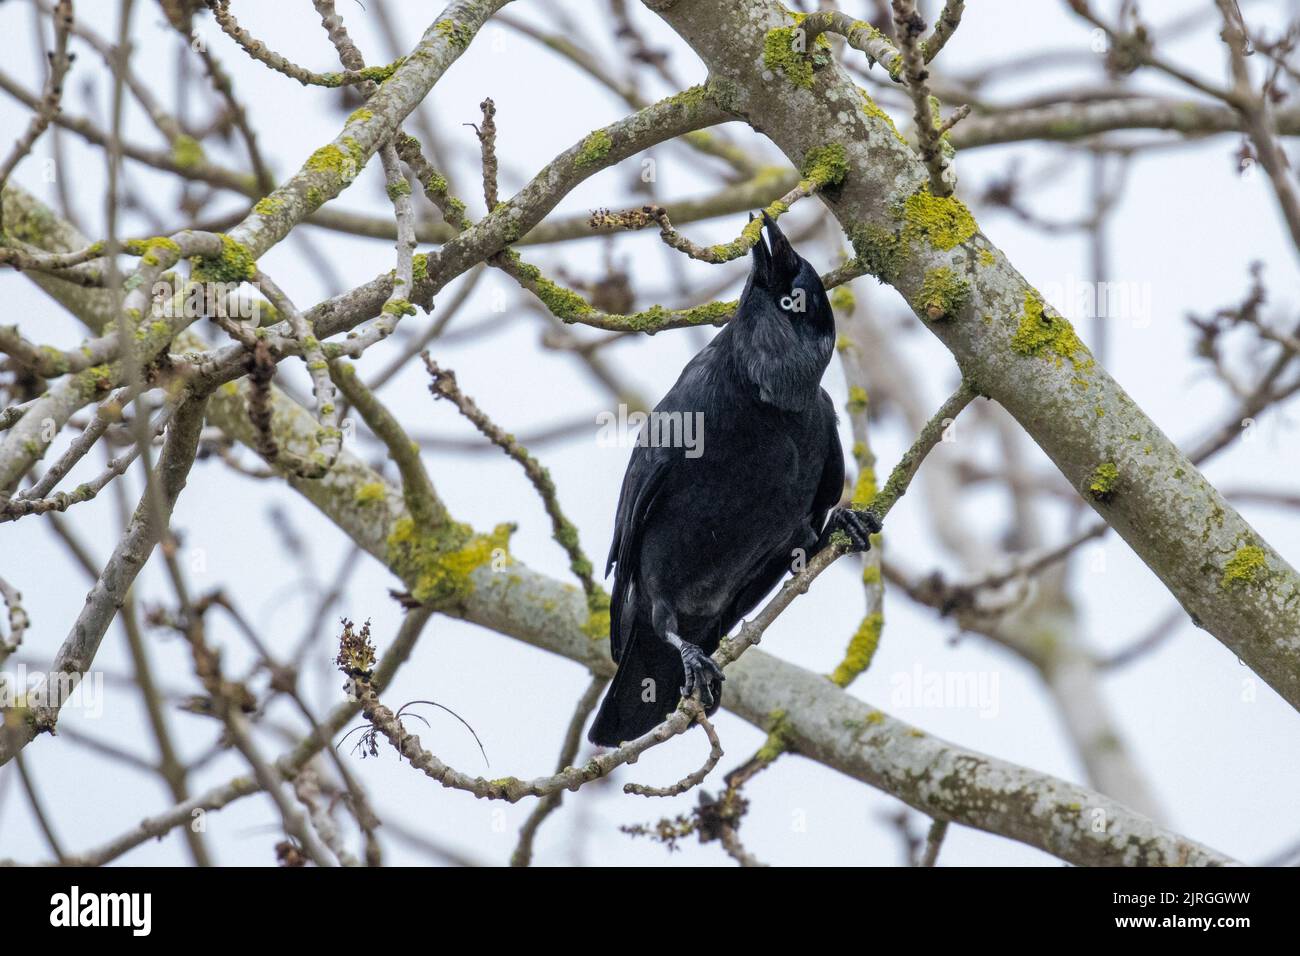 Jackdaw (Corvus monedula) dans un arbre, arrachant des brindilles pour la construction de nids, Yorkshire, faune britannique Banque D'Images